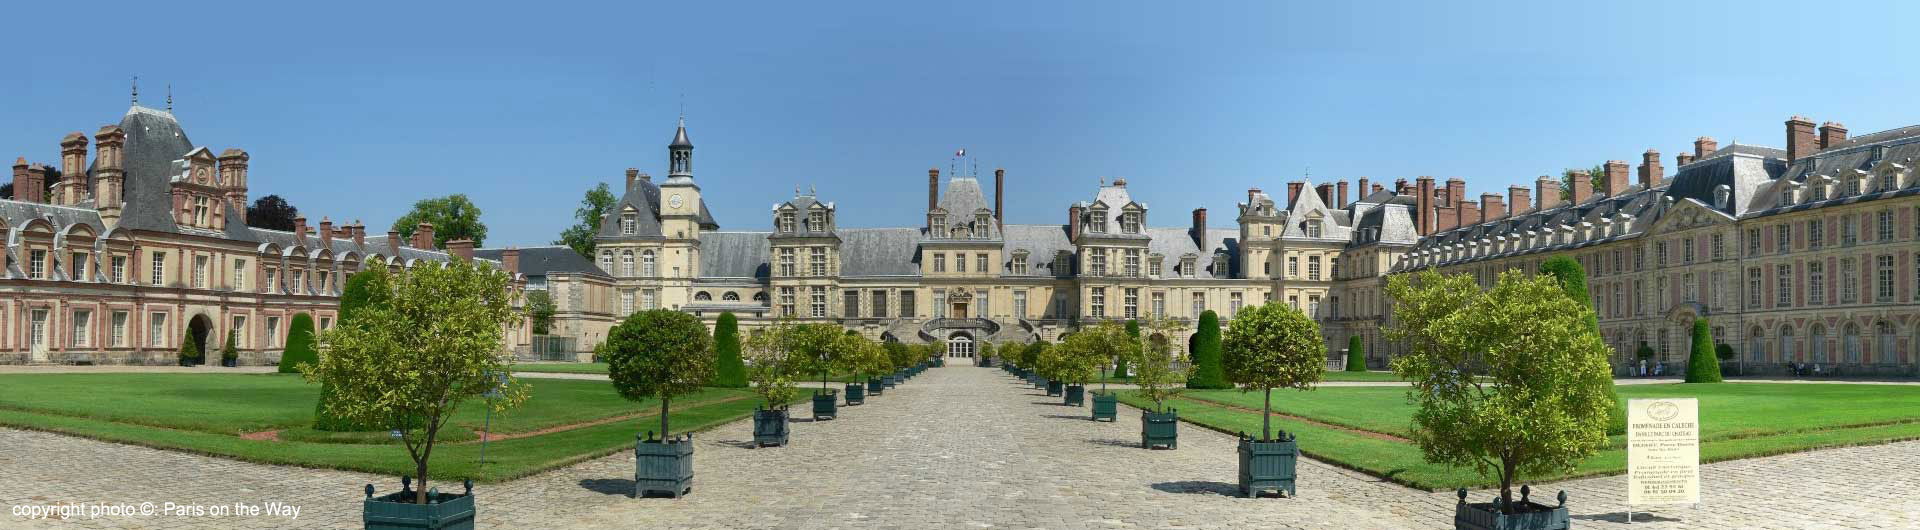 Gardens At Chateau De Fontainebleau Near Paris Stock Photo